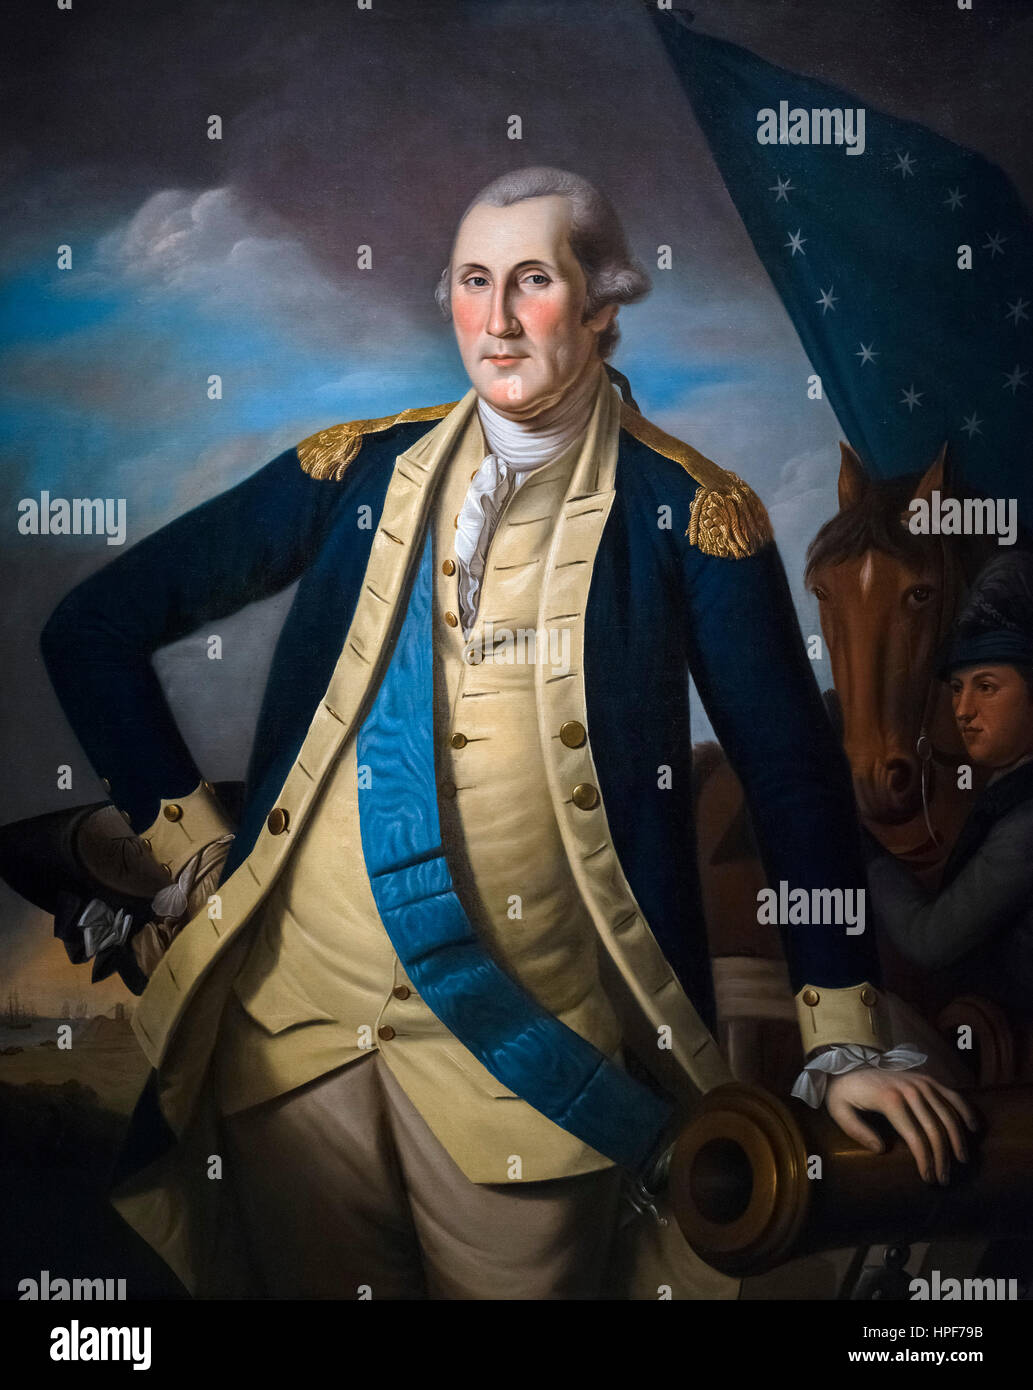 Ritratto del generale George Washington da Charles Willson Peale, olio su tela, c.1781-82. Washington è mostrato nella Battaglia di Yorktown nel 1781 Foto Stock